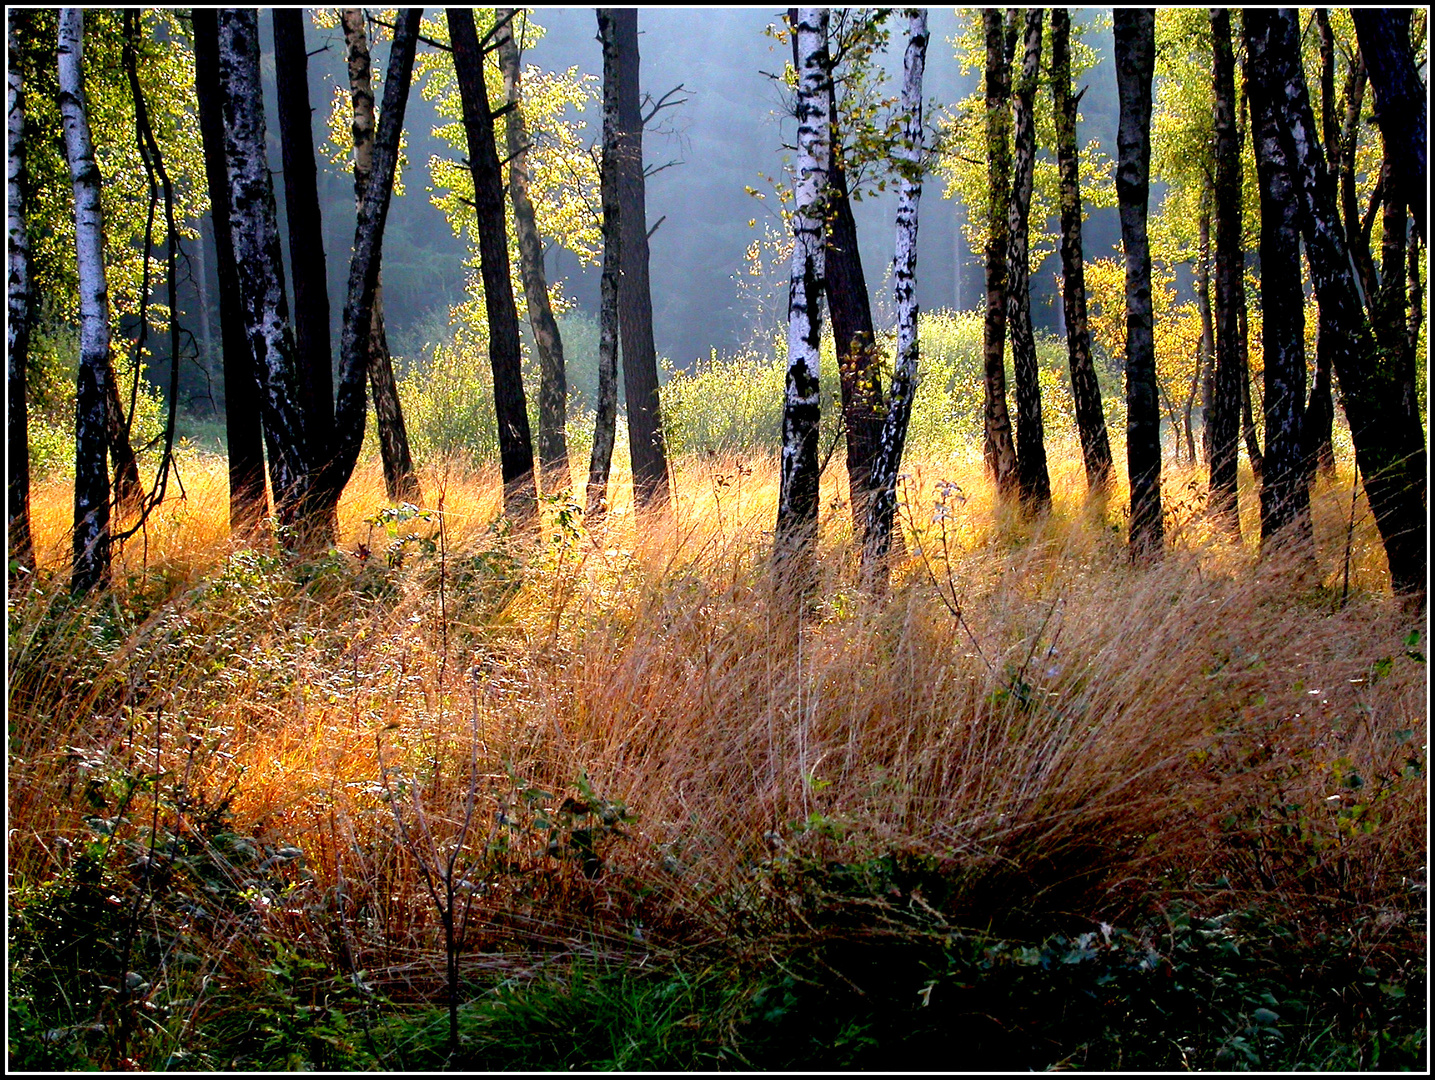 Herbst im Birkenwald